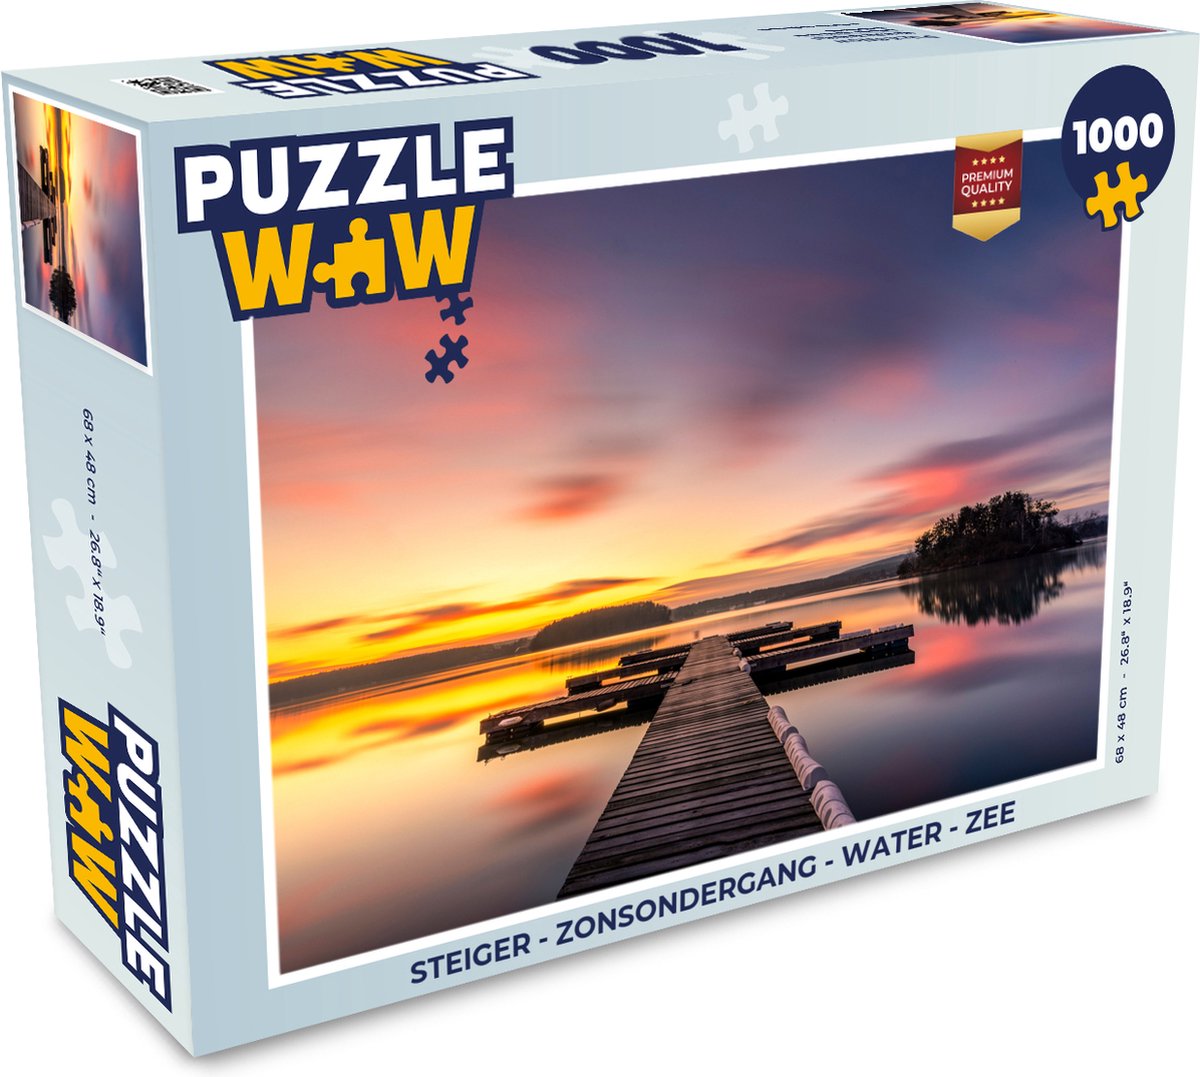 Puzzel Steiger - Zonsondergang - Water - Zee - Reflectie - Legpuzzel - Puzzel 1000 stukjes volwassenen - PuzzleWow